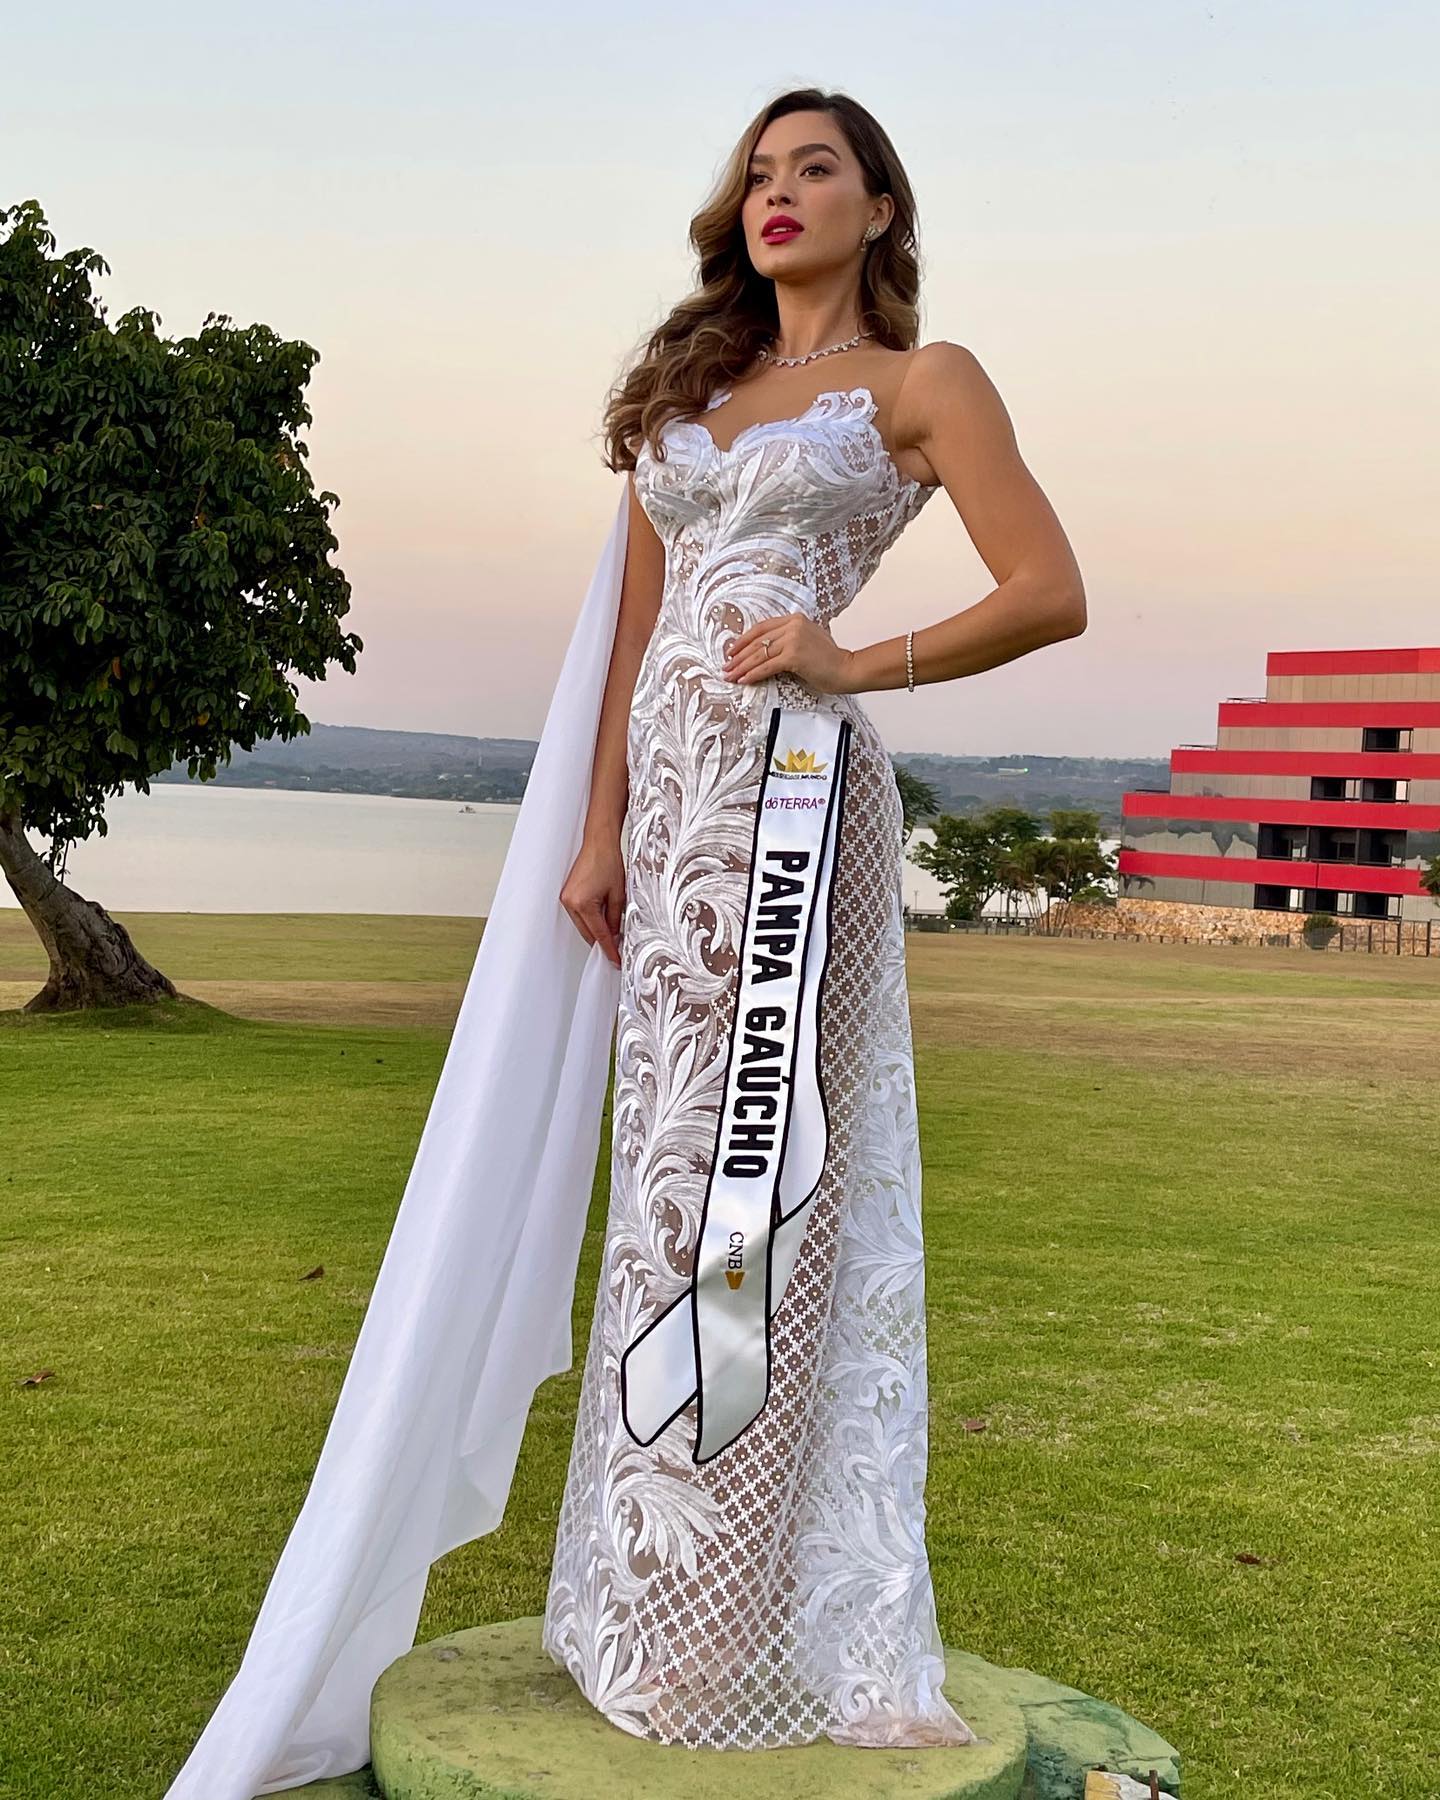 andrieli rozin, top 12 de miss brasil mundo 2021. 30939520